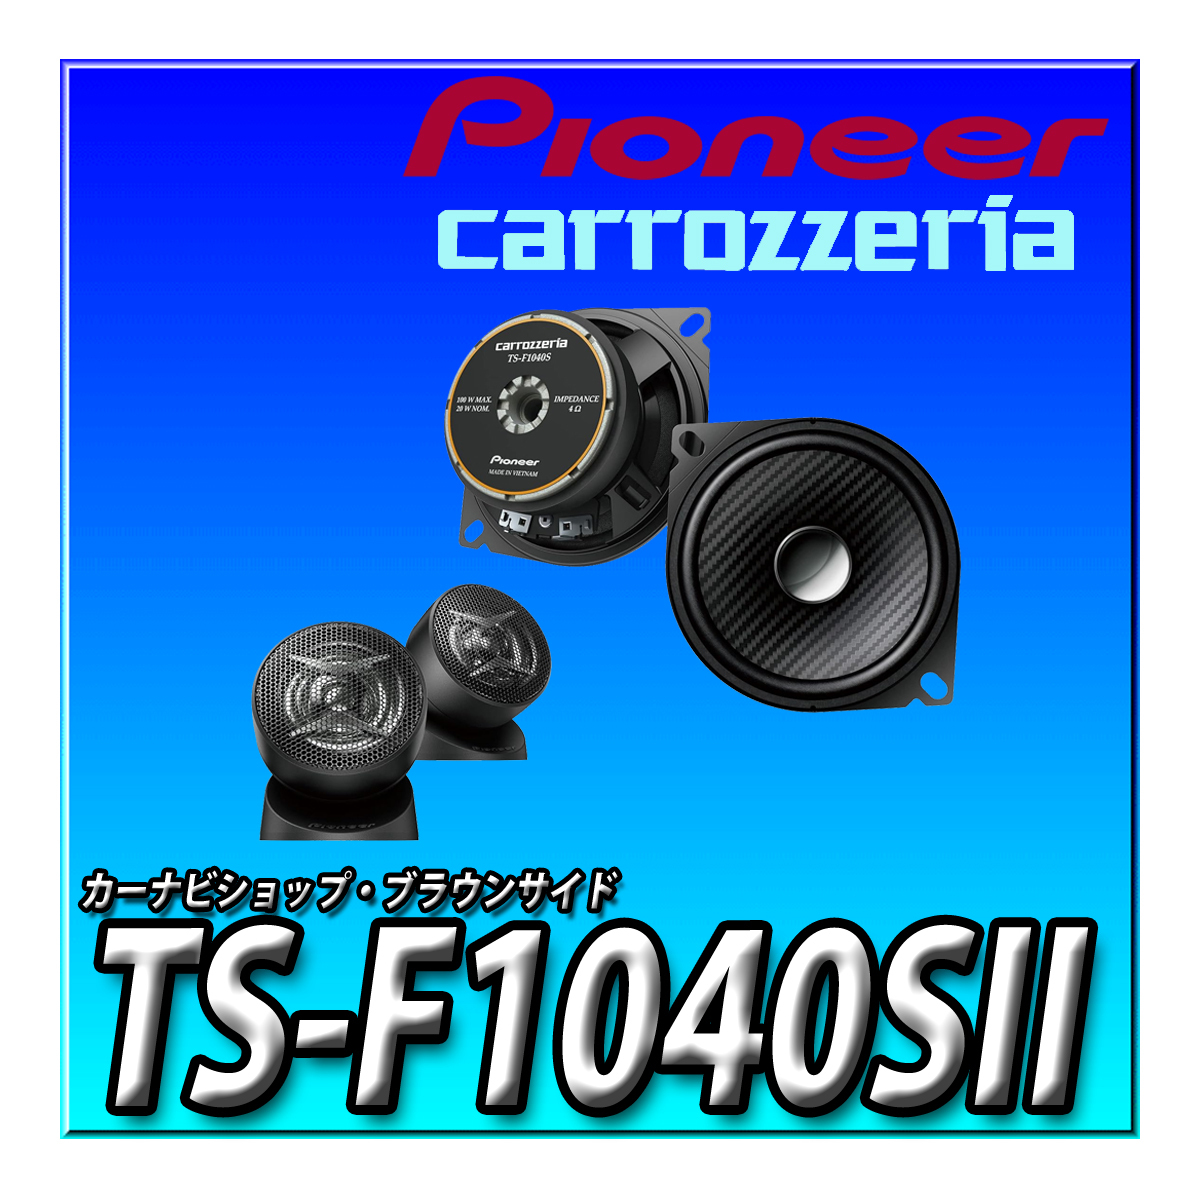 TS-F1040SII новый товар нераспечатанный бесплатная доставка Pioneer 10cm custom Fit динамик раздельный 2 way в высоком разрешени соответствует Carozzeria 